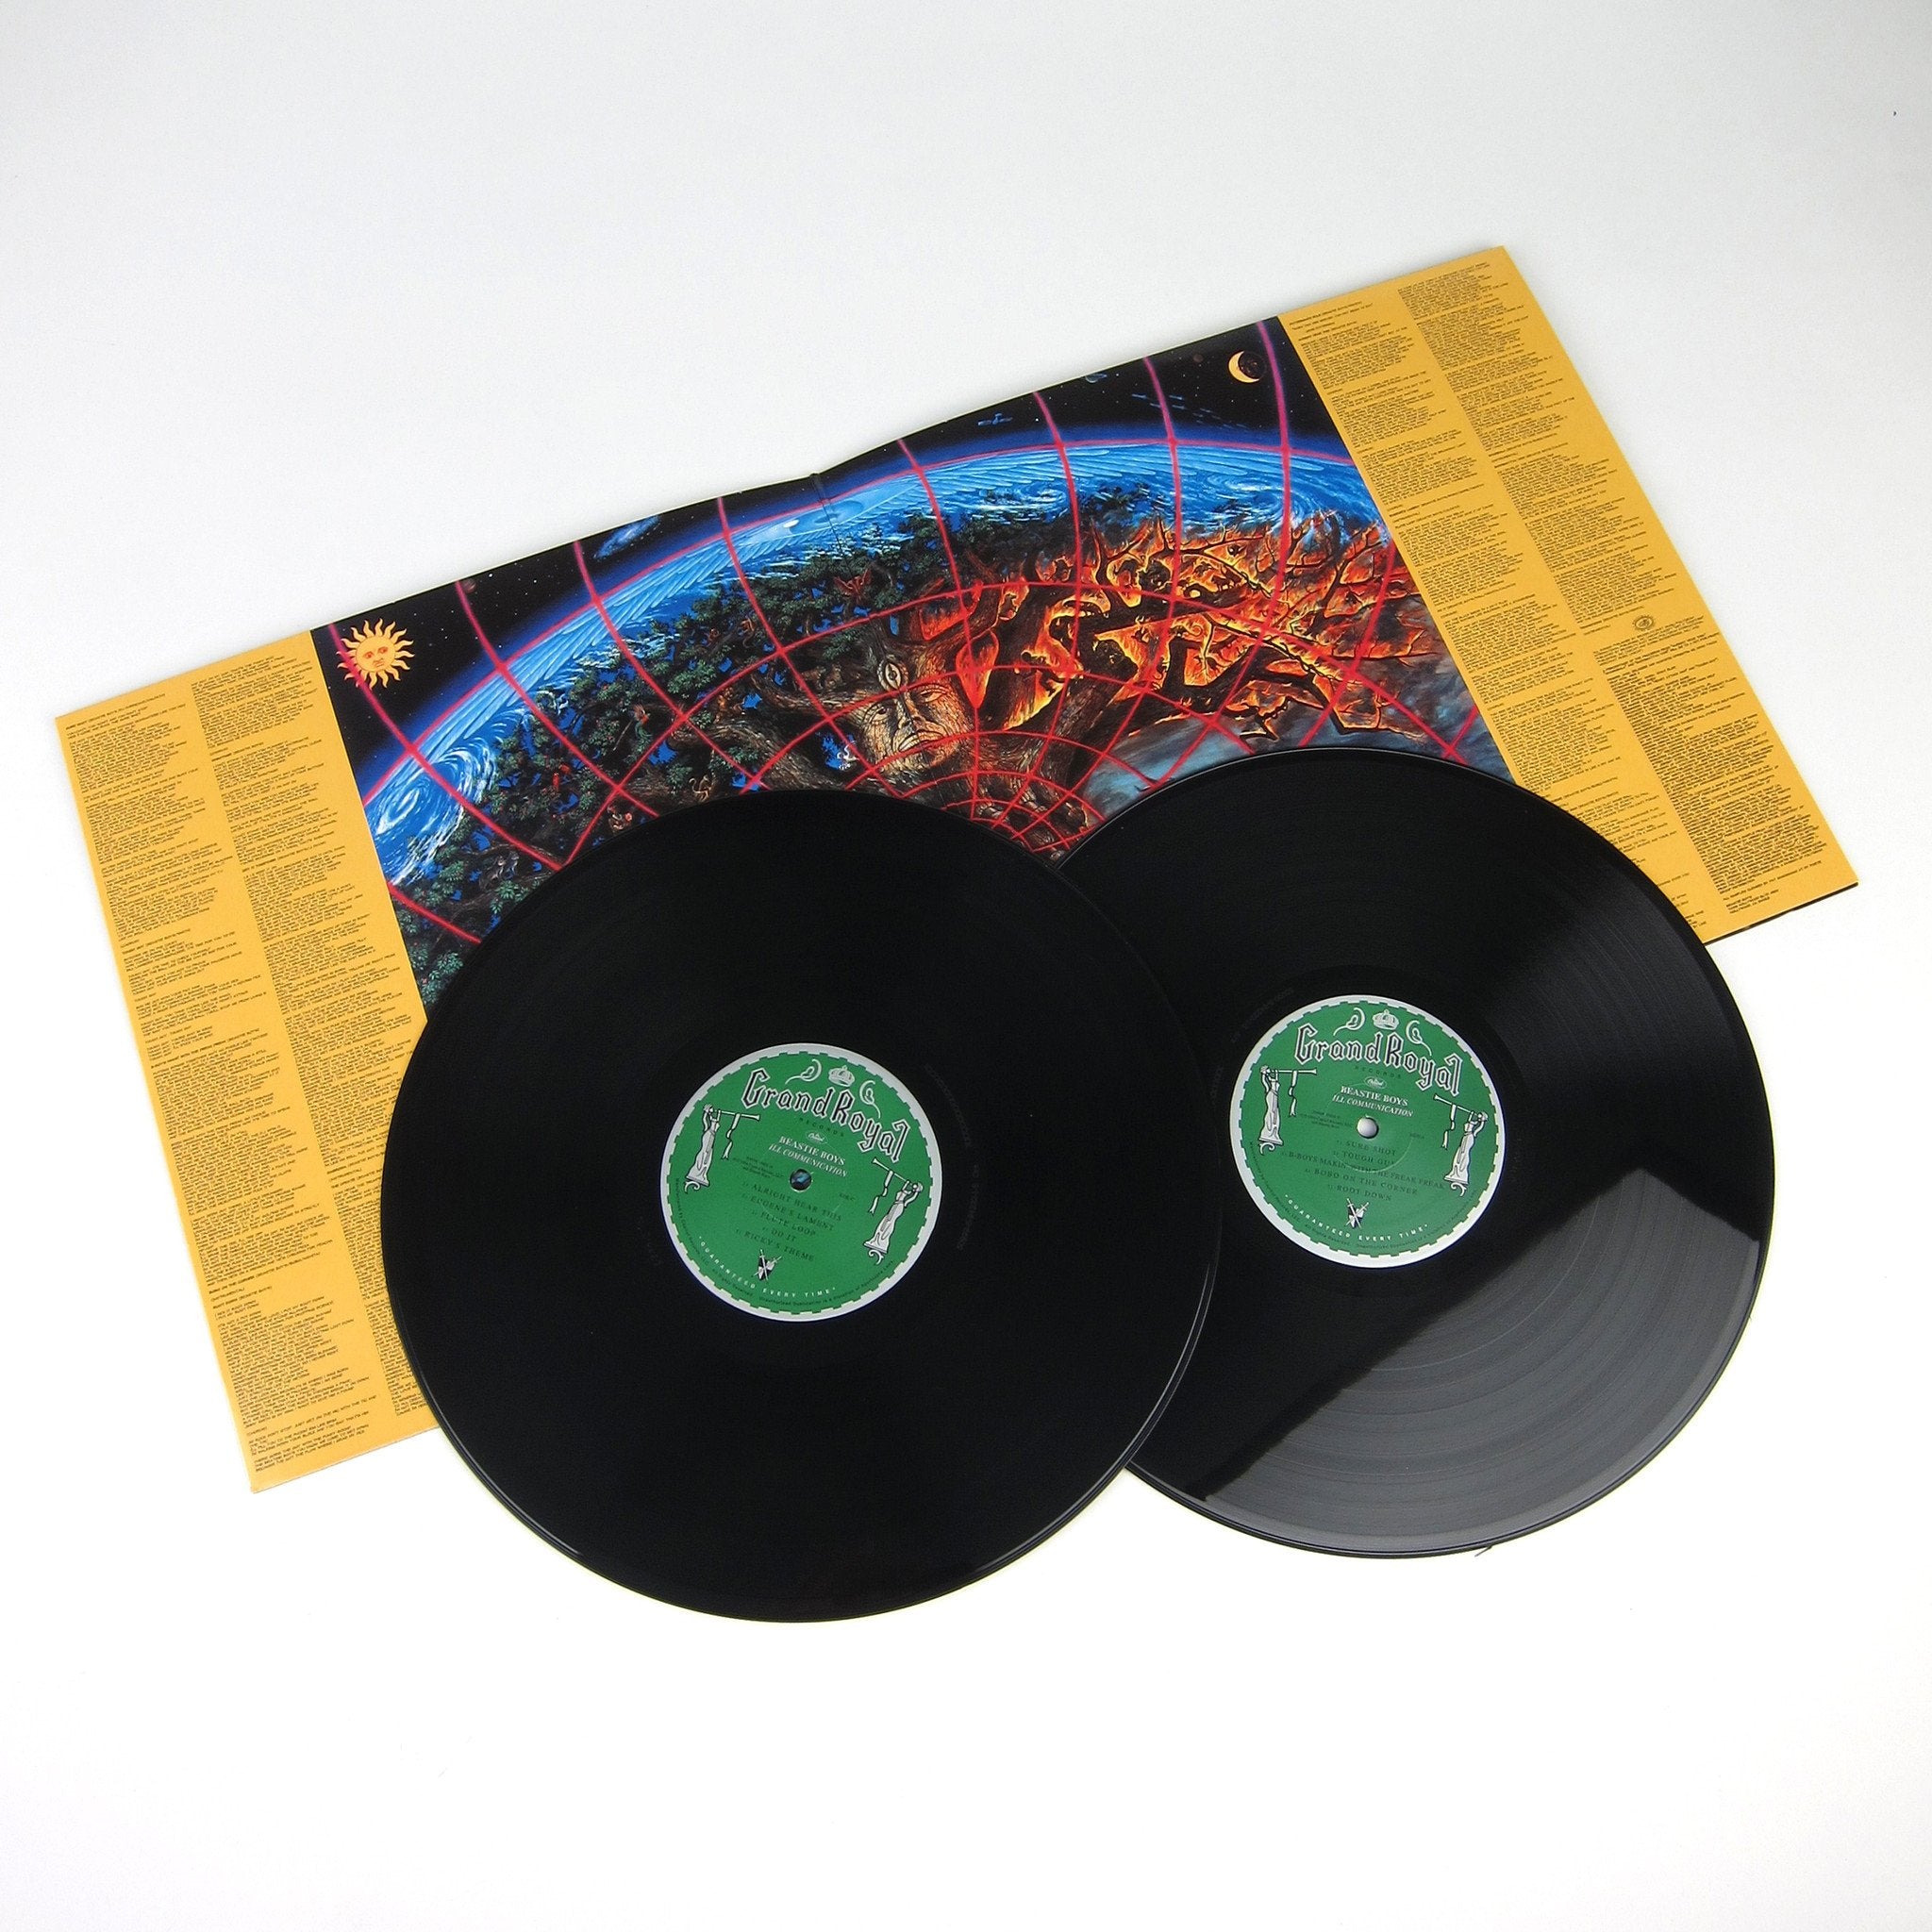 Beastie Boys: 180g Vinyl LP Album Pack (Paul's Boutique, Check Your Head, Ill Communication)